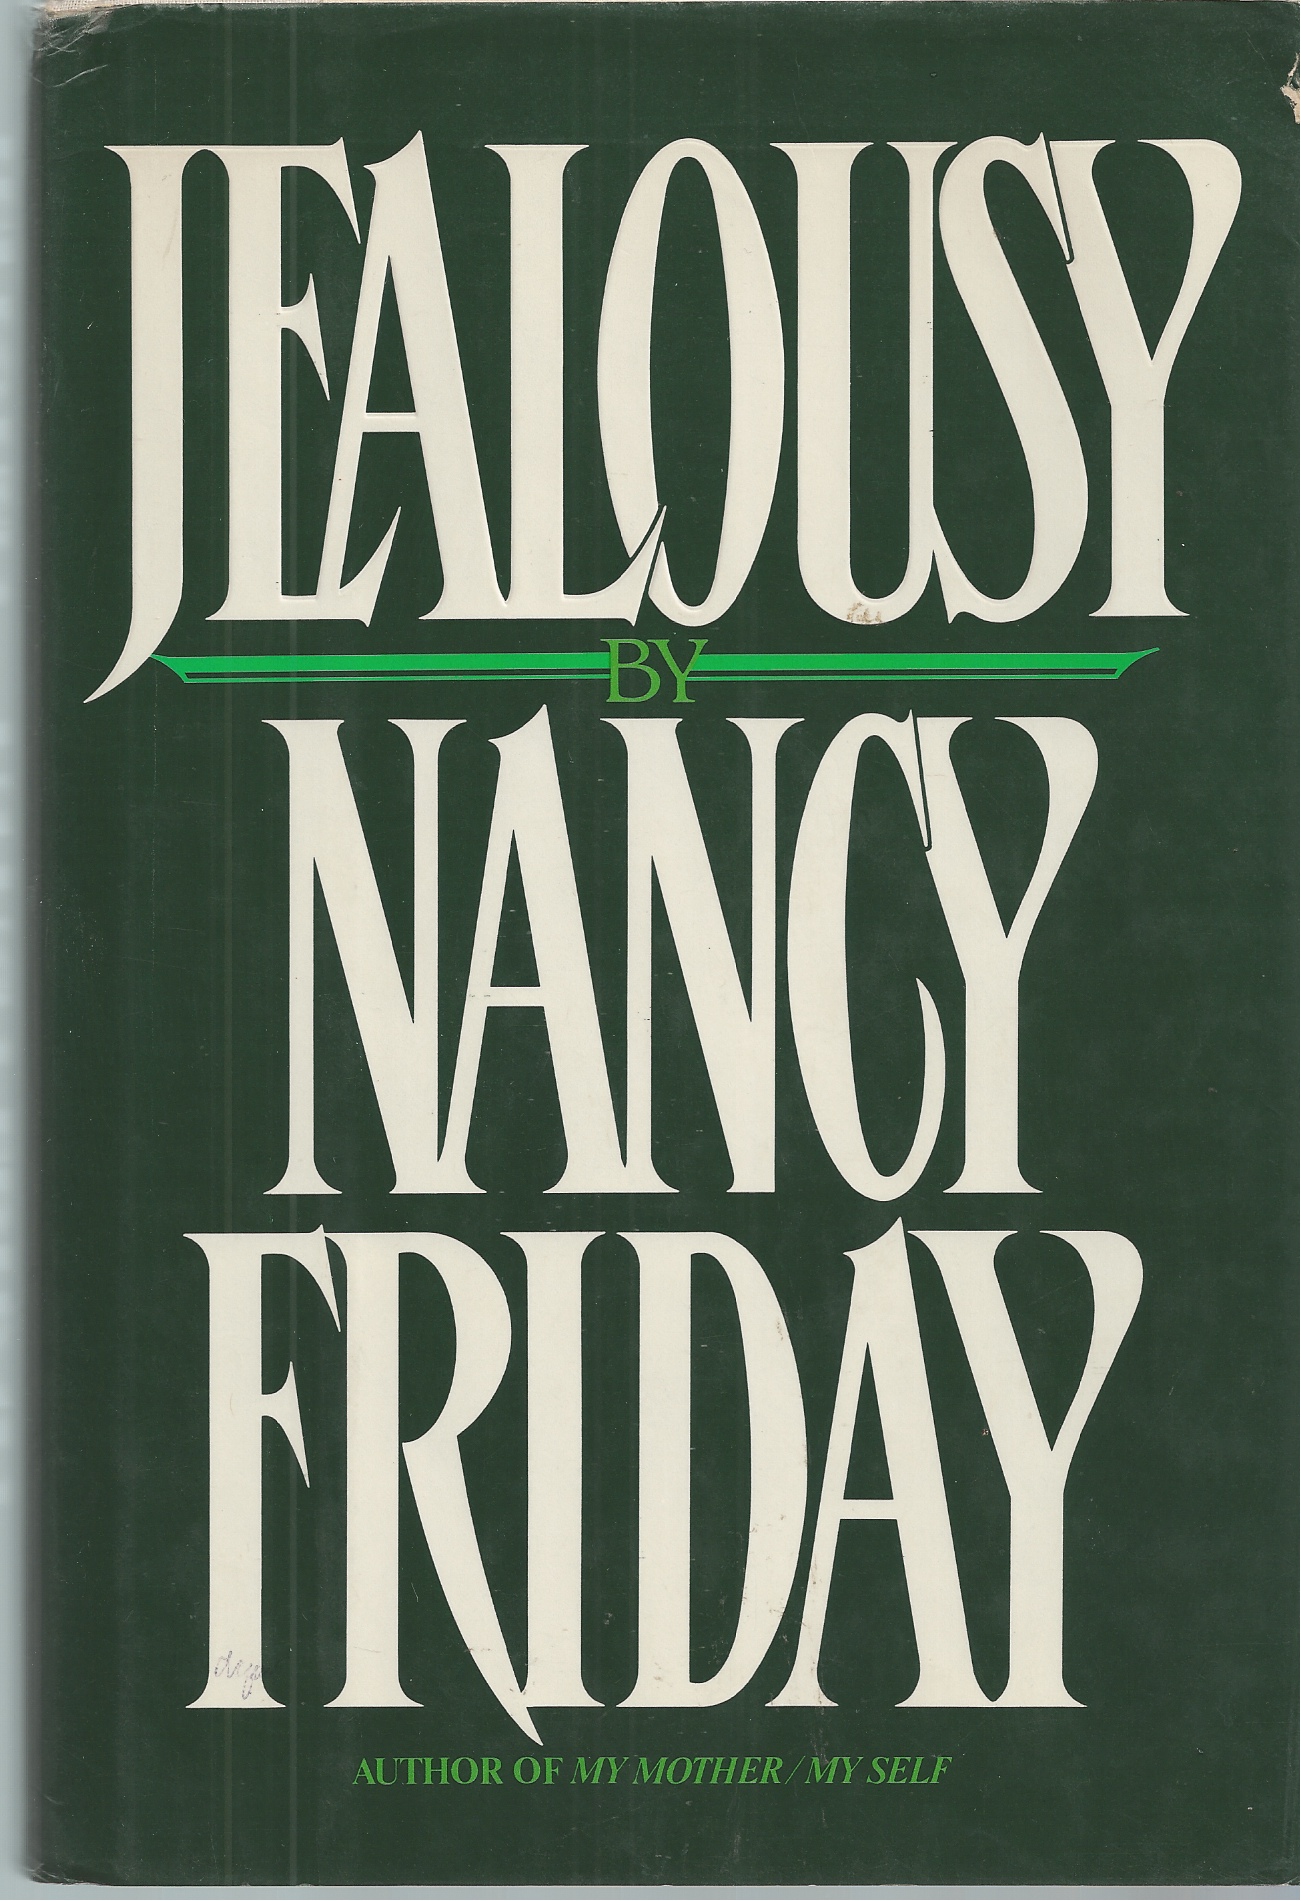 FRIDAY NANCY - Jealousy